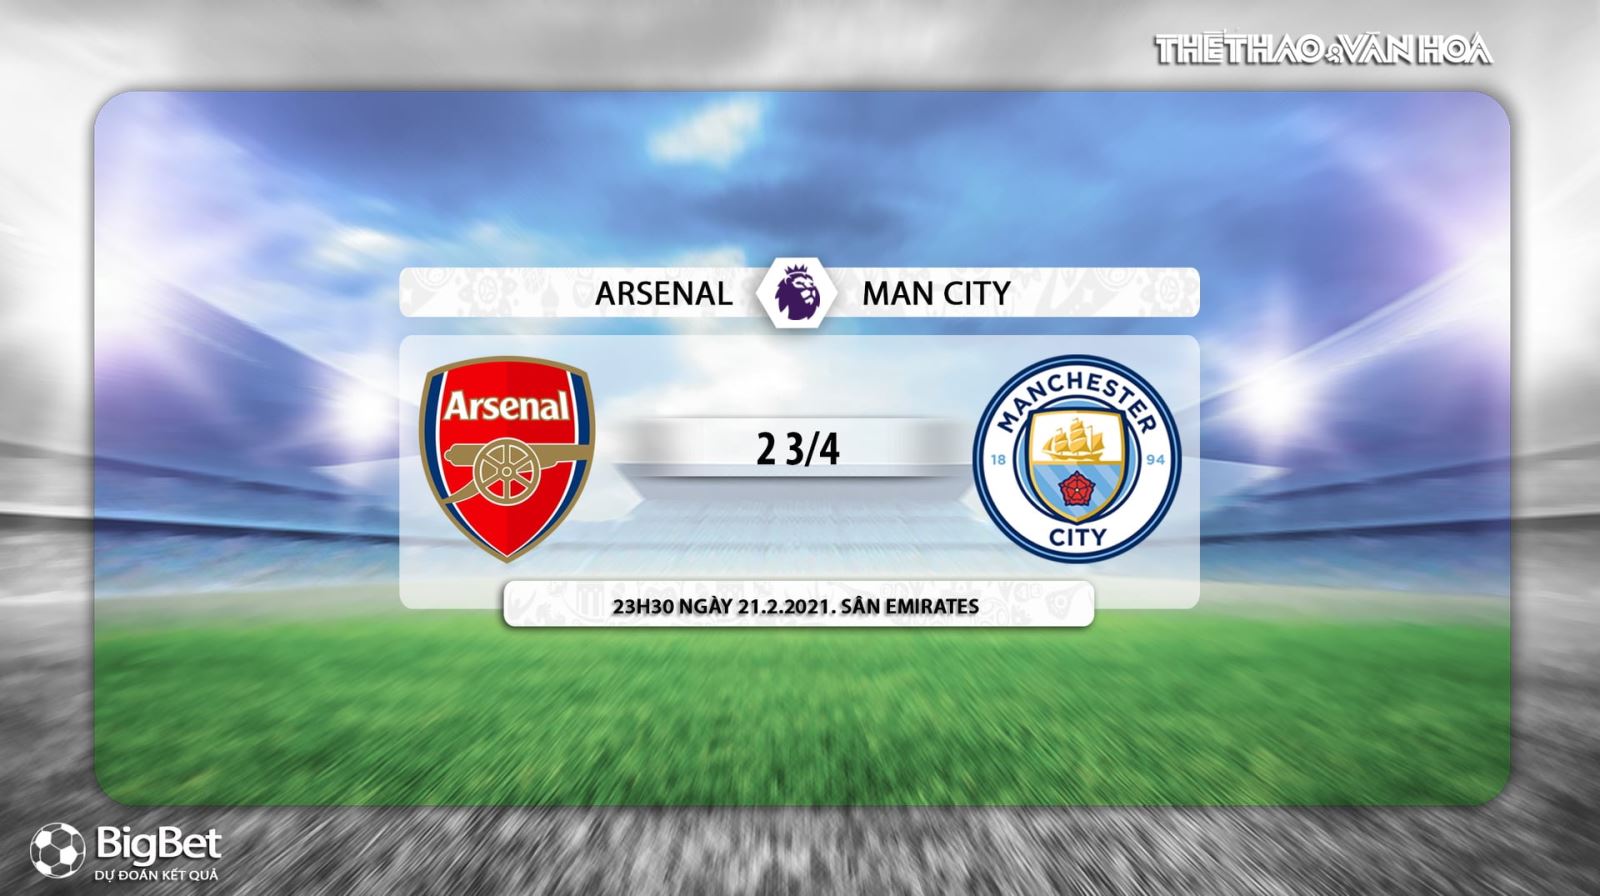 Link trực tiếp Arsenal vs Man City, K+PM trực tiếp Ngoại hạng Anh, Trực tiếp bóng đá, Lịch thi đấu bóng đá Anh: Arsenal vs Man City, Bảng xếp hạng Ngoại hạng Anh, bong da